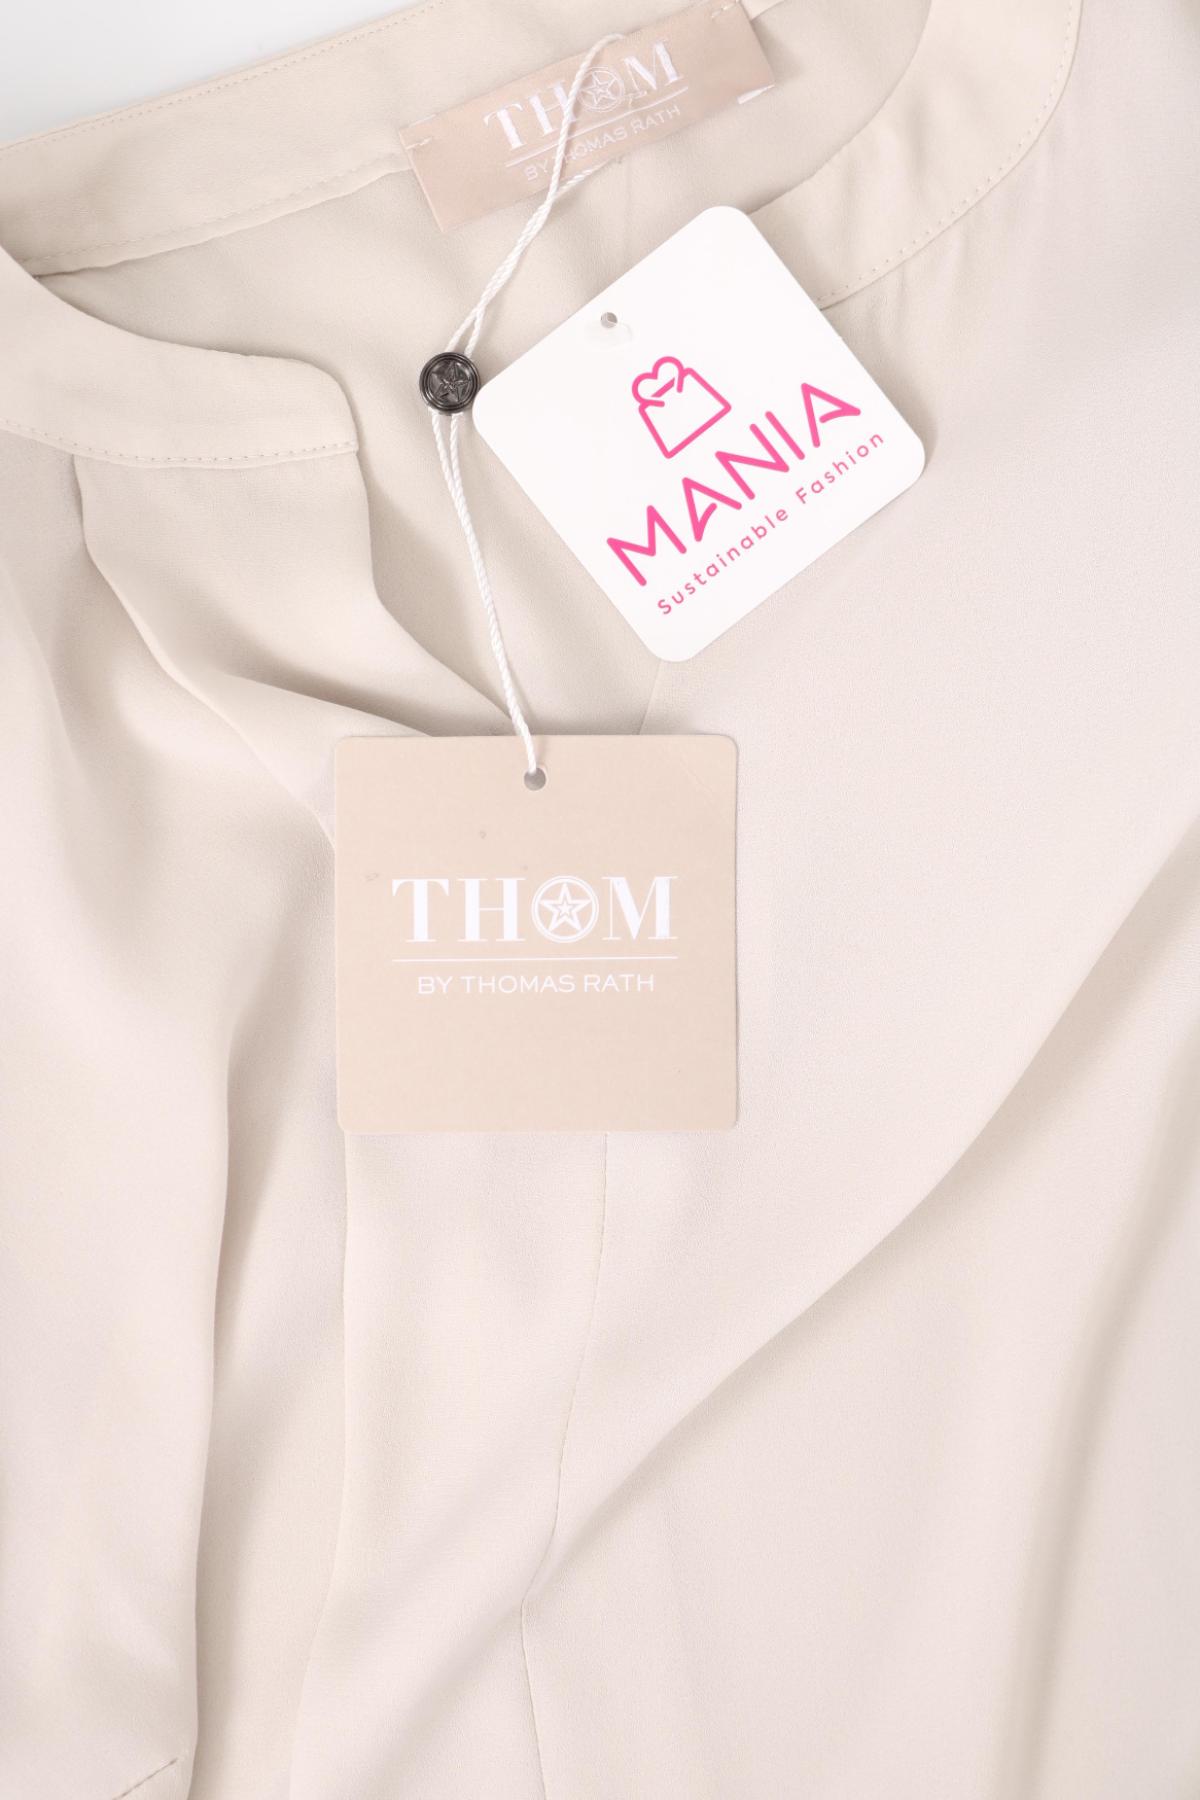 Блуза THOM BY THOMAS RATH3